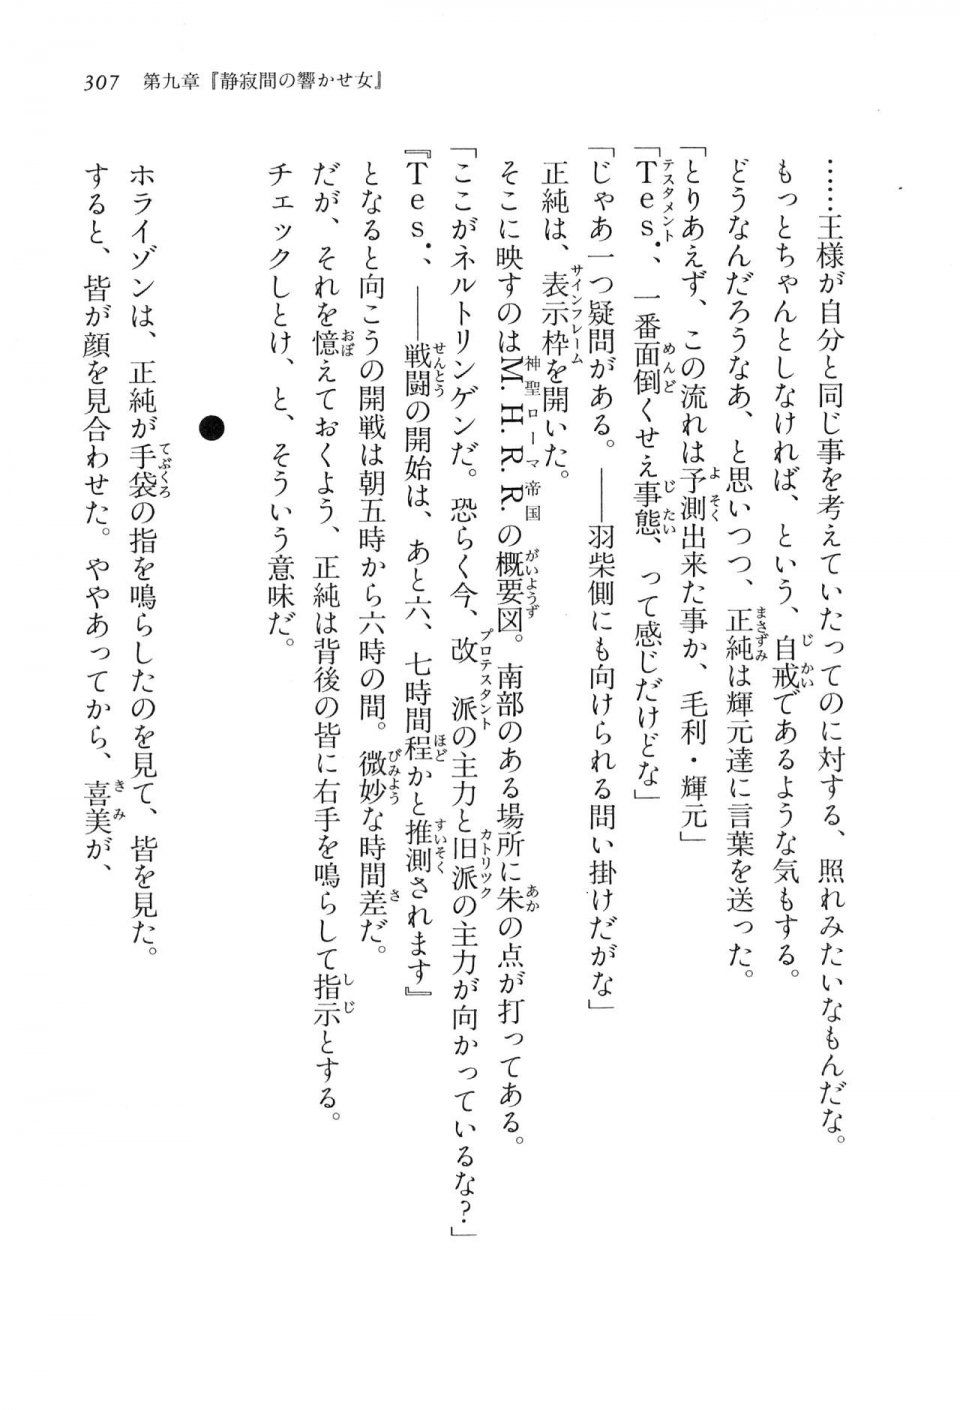 Kyoukai Senjou no Horizon LN Vol 16(7A) - Photo #307